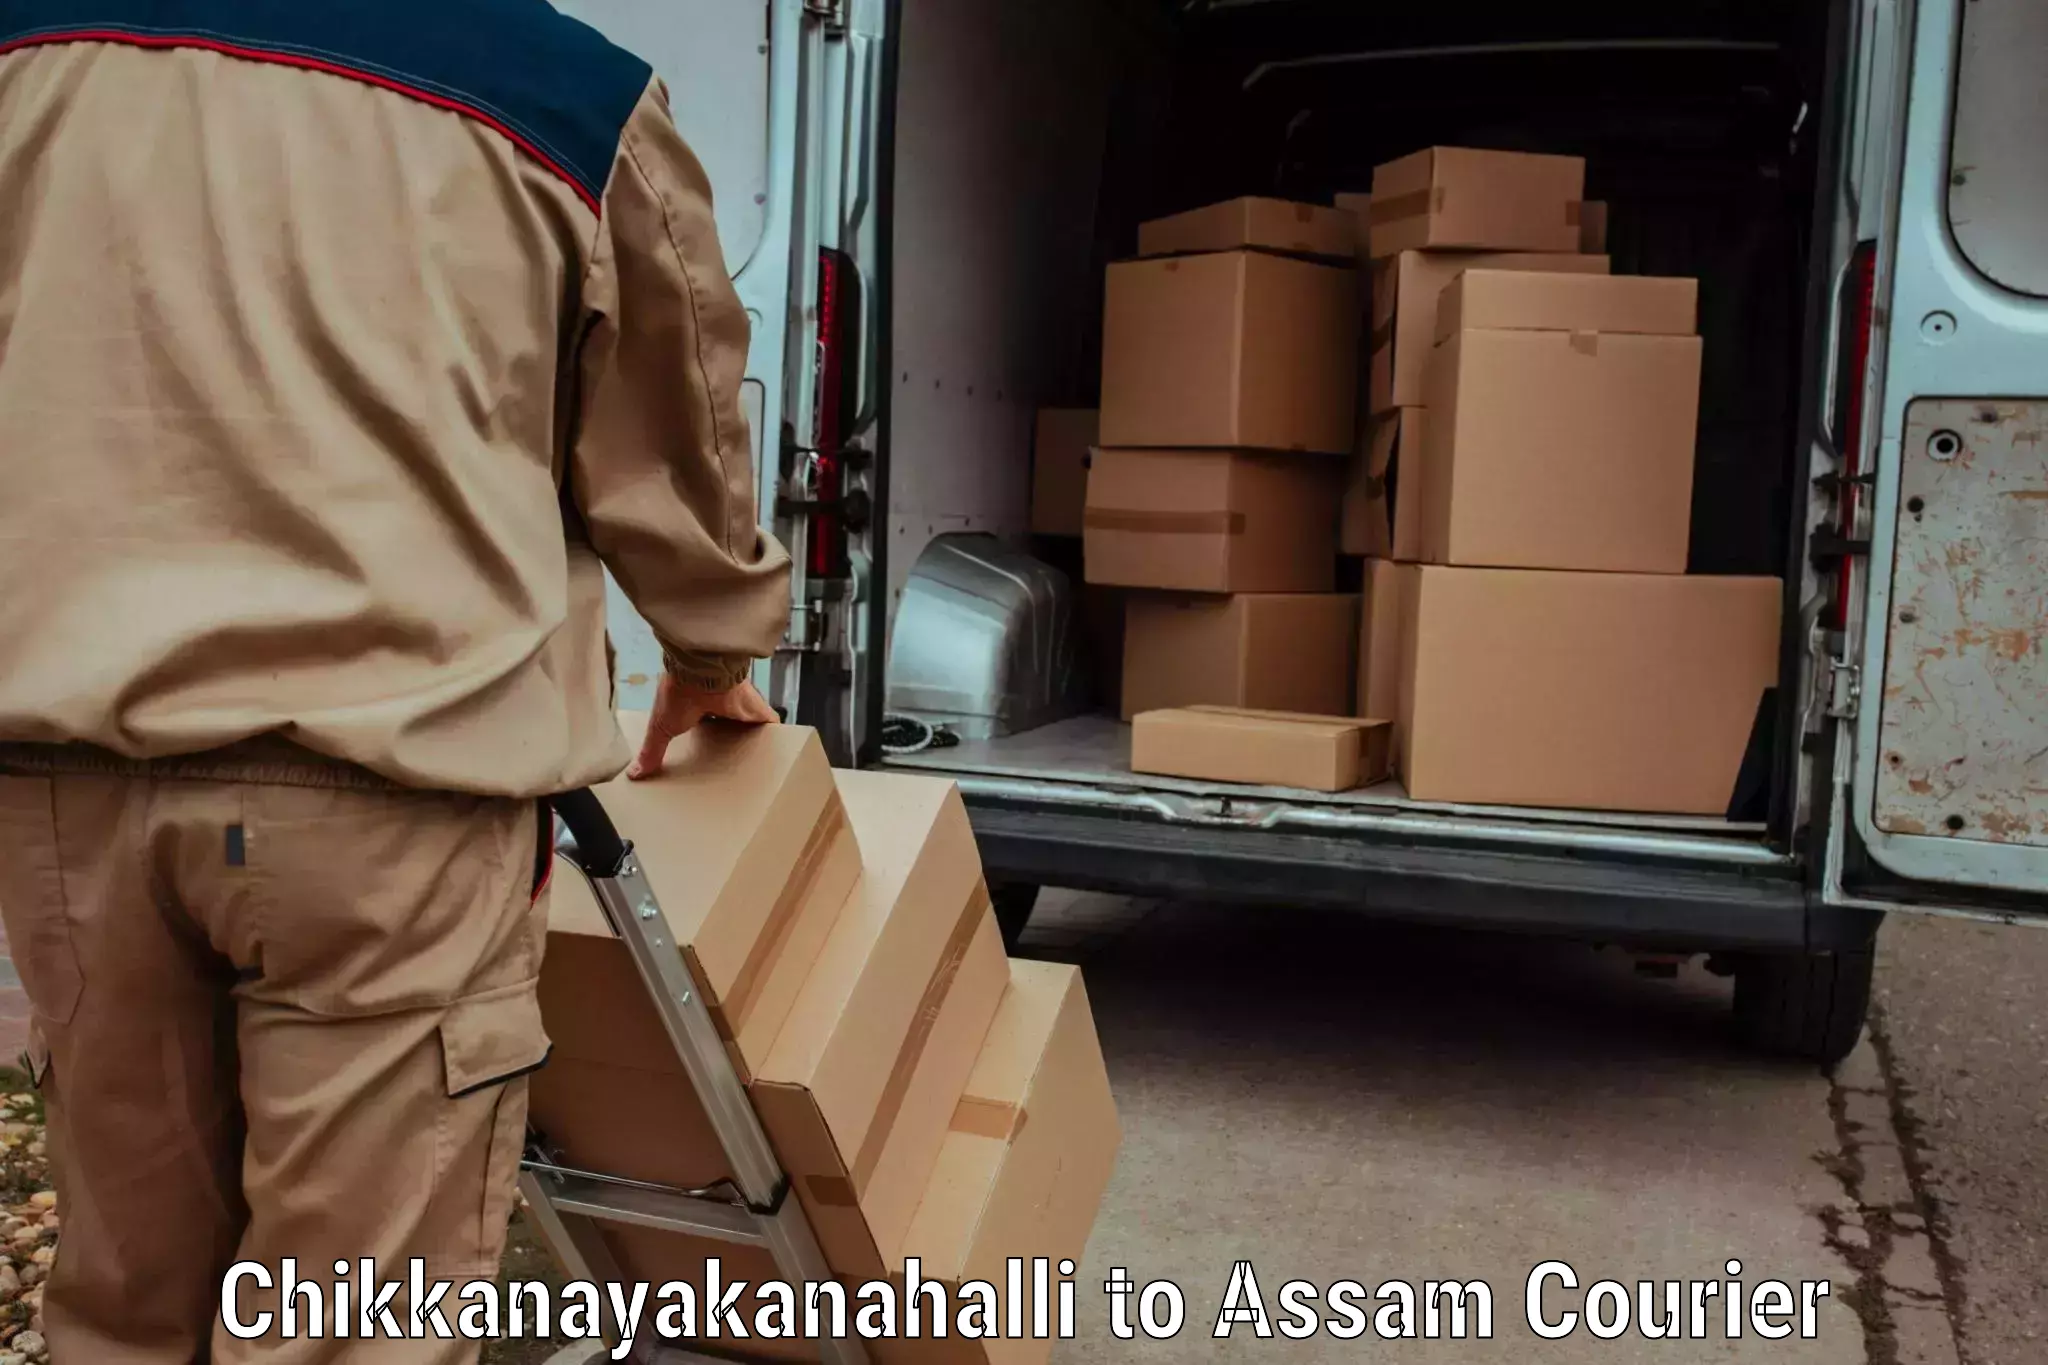 Sustainable courier practices Chikkanayakanahalli to Kaliabor